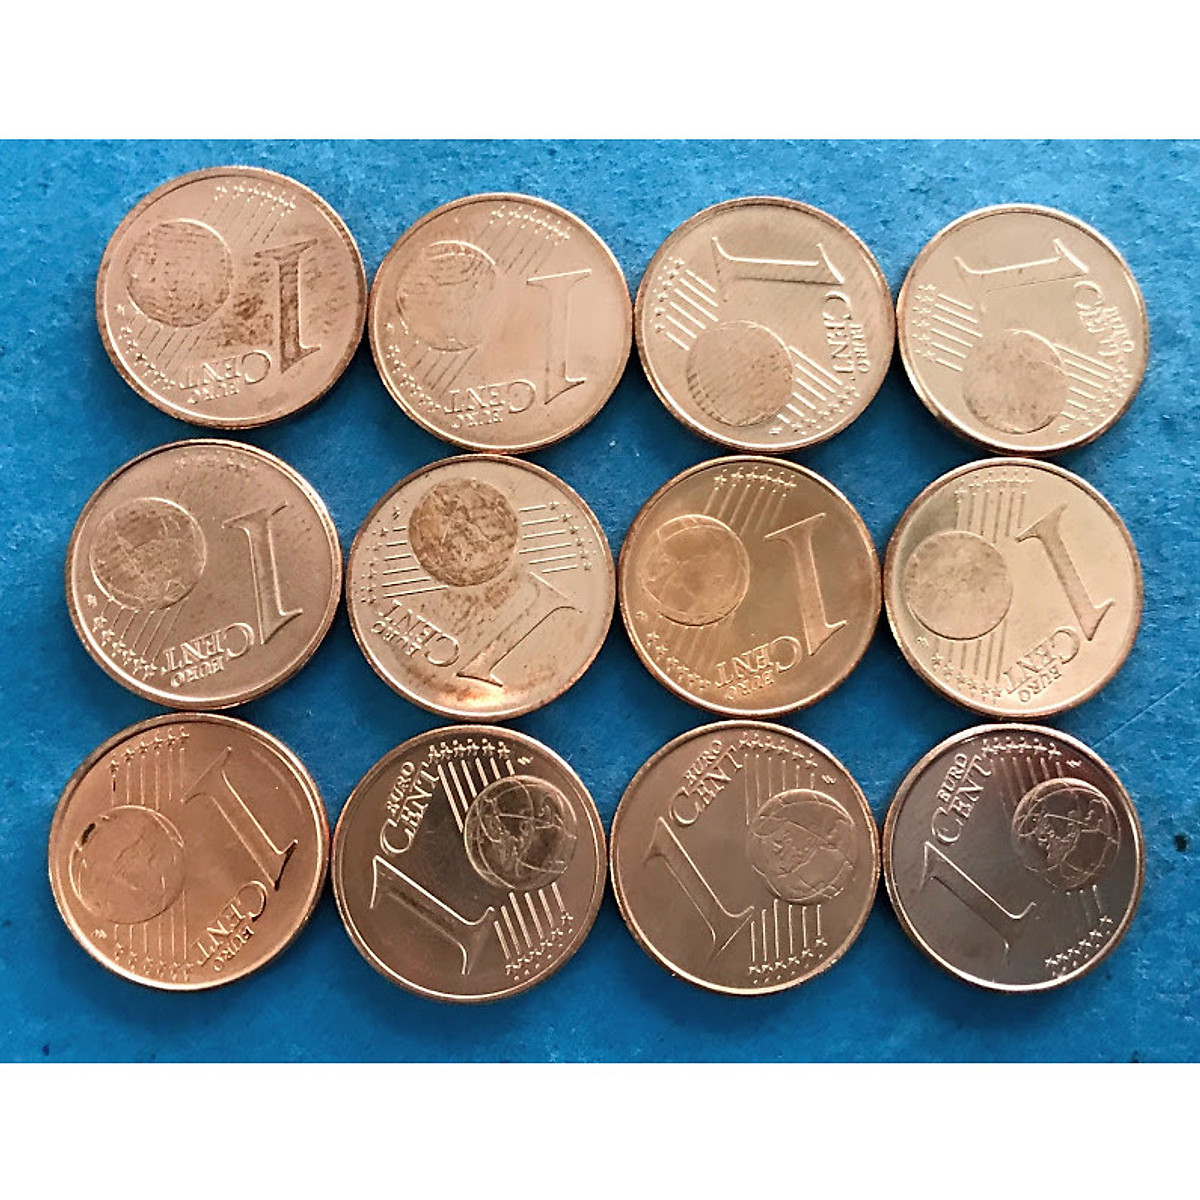 Bộ tiền 12 xu 1 cent châu Âu có thiết kế đẹp mắt và đa dạng với các quốc gia khác nhau. Hãy xem hình ảnh về bộ tiền này để khám phá thế giới đầy màu sắc và độc đáo của các loại tiền xu châu Âu.